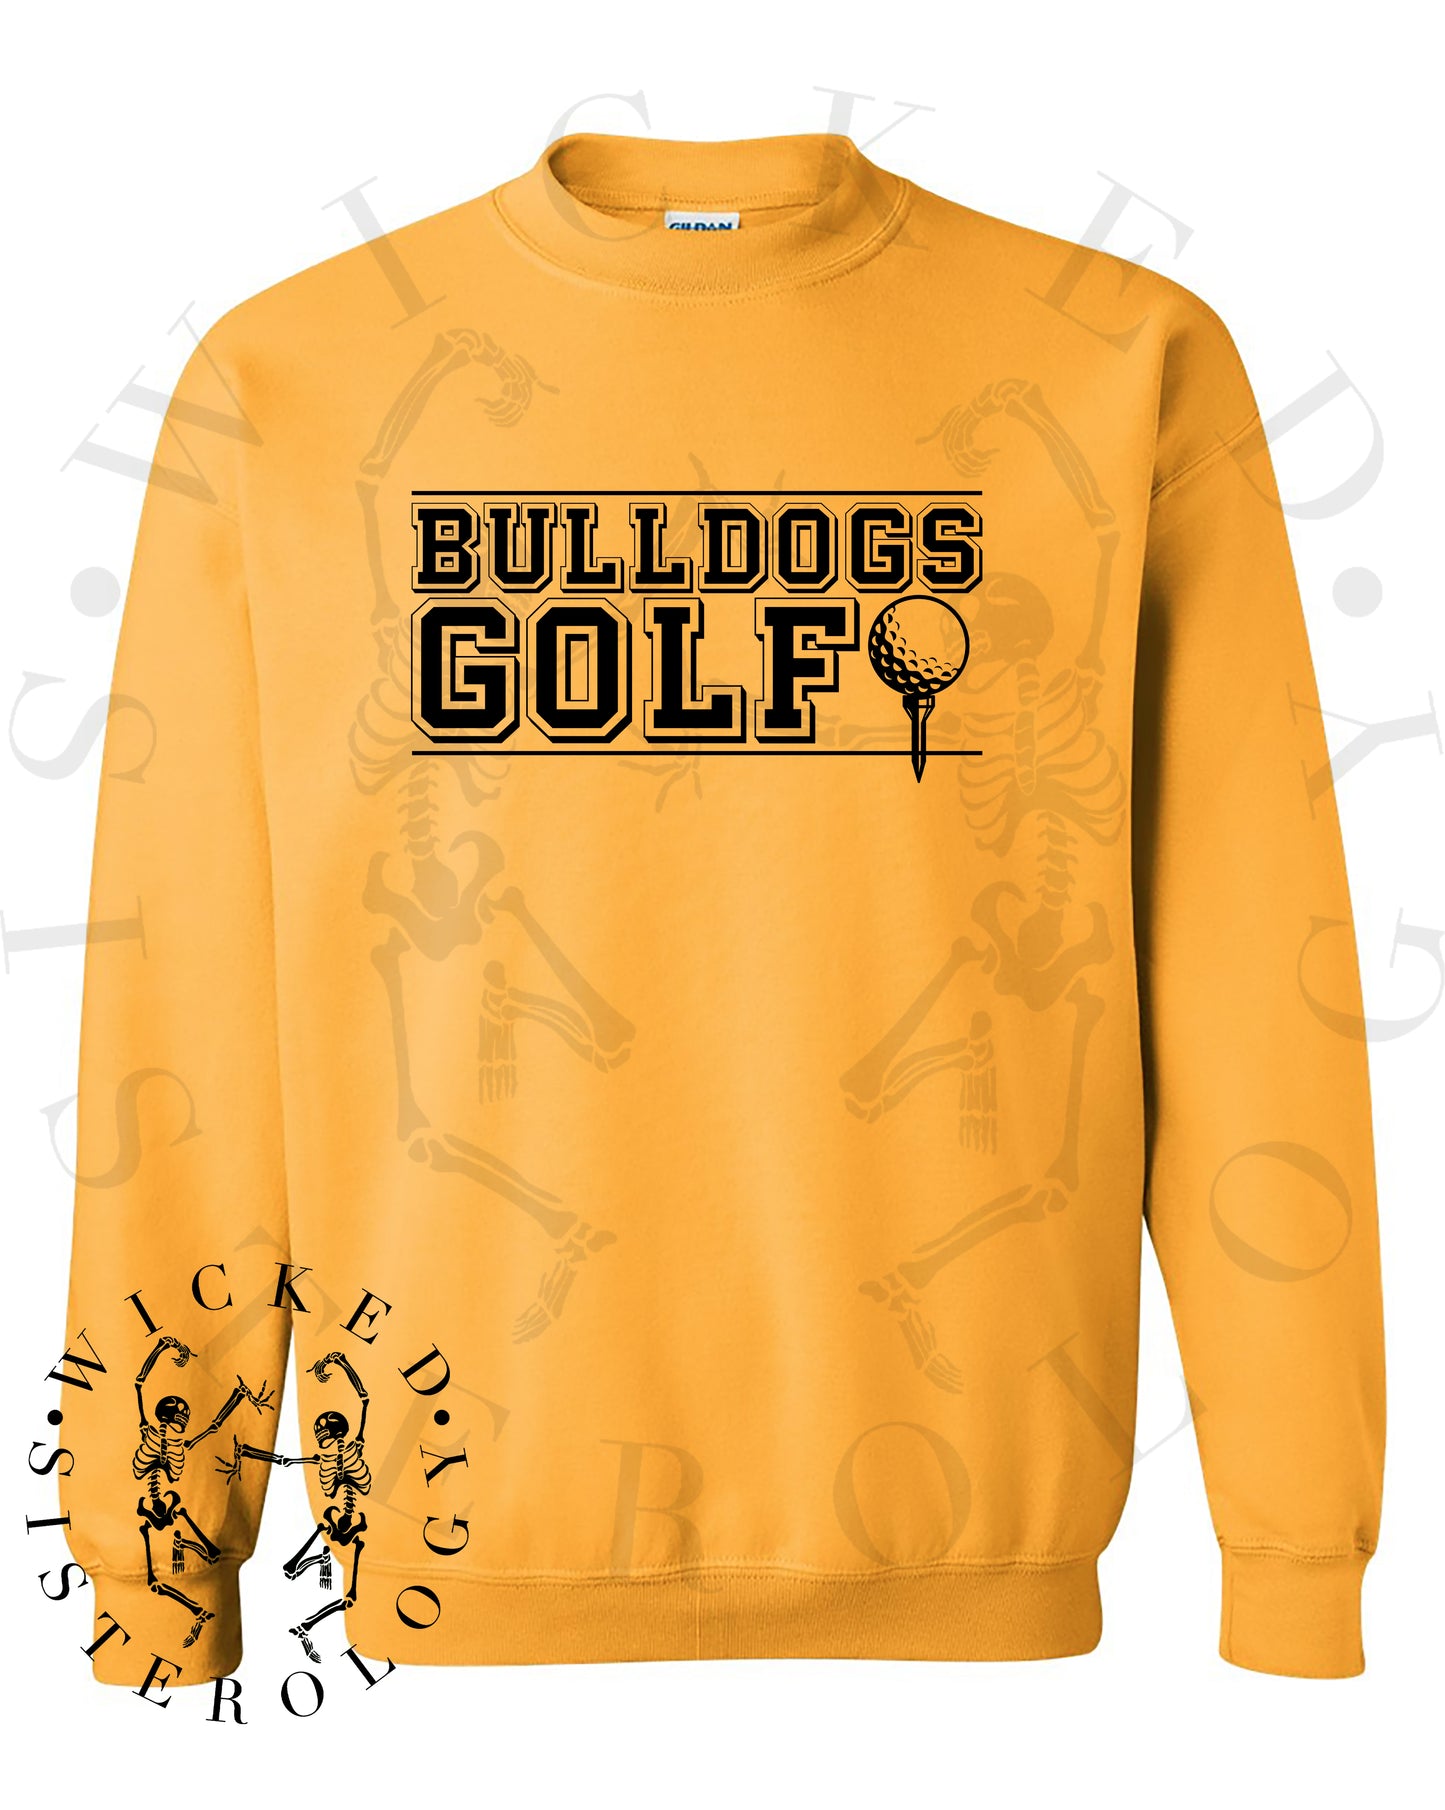 Bulldogs Golf SR2